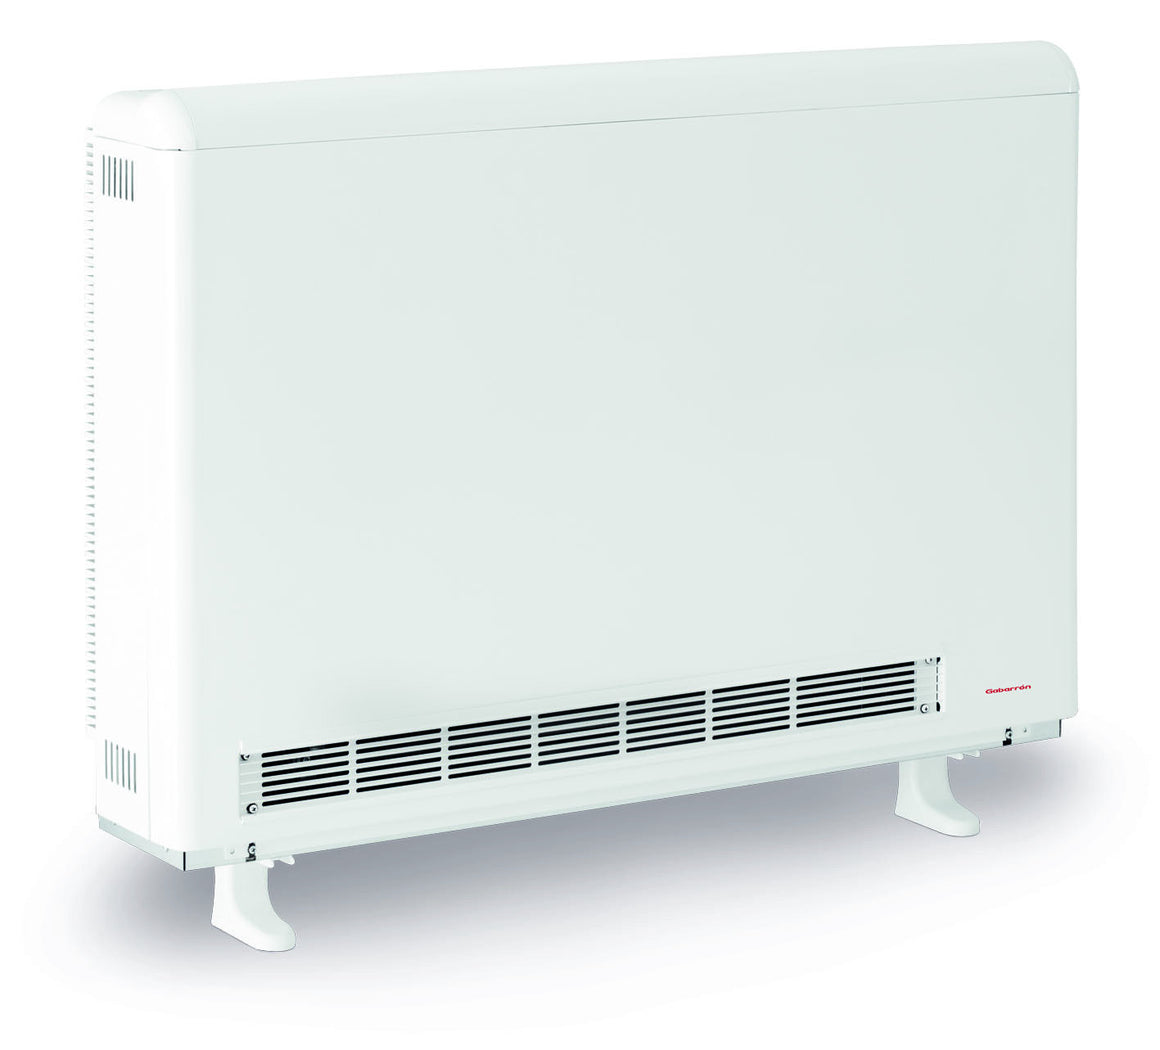 Elnur Ecombi HHR High heat retention storage heater